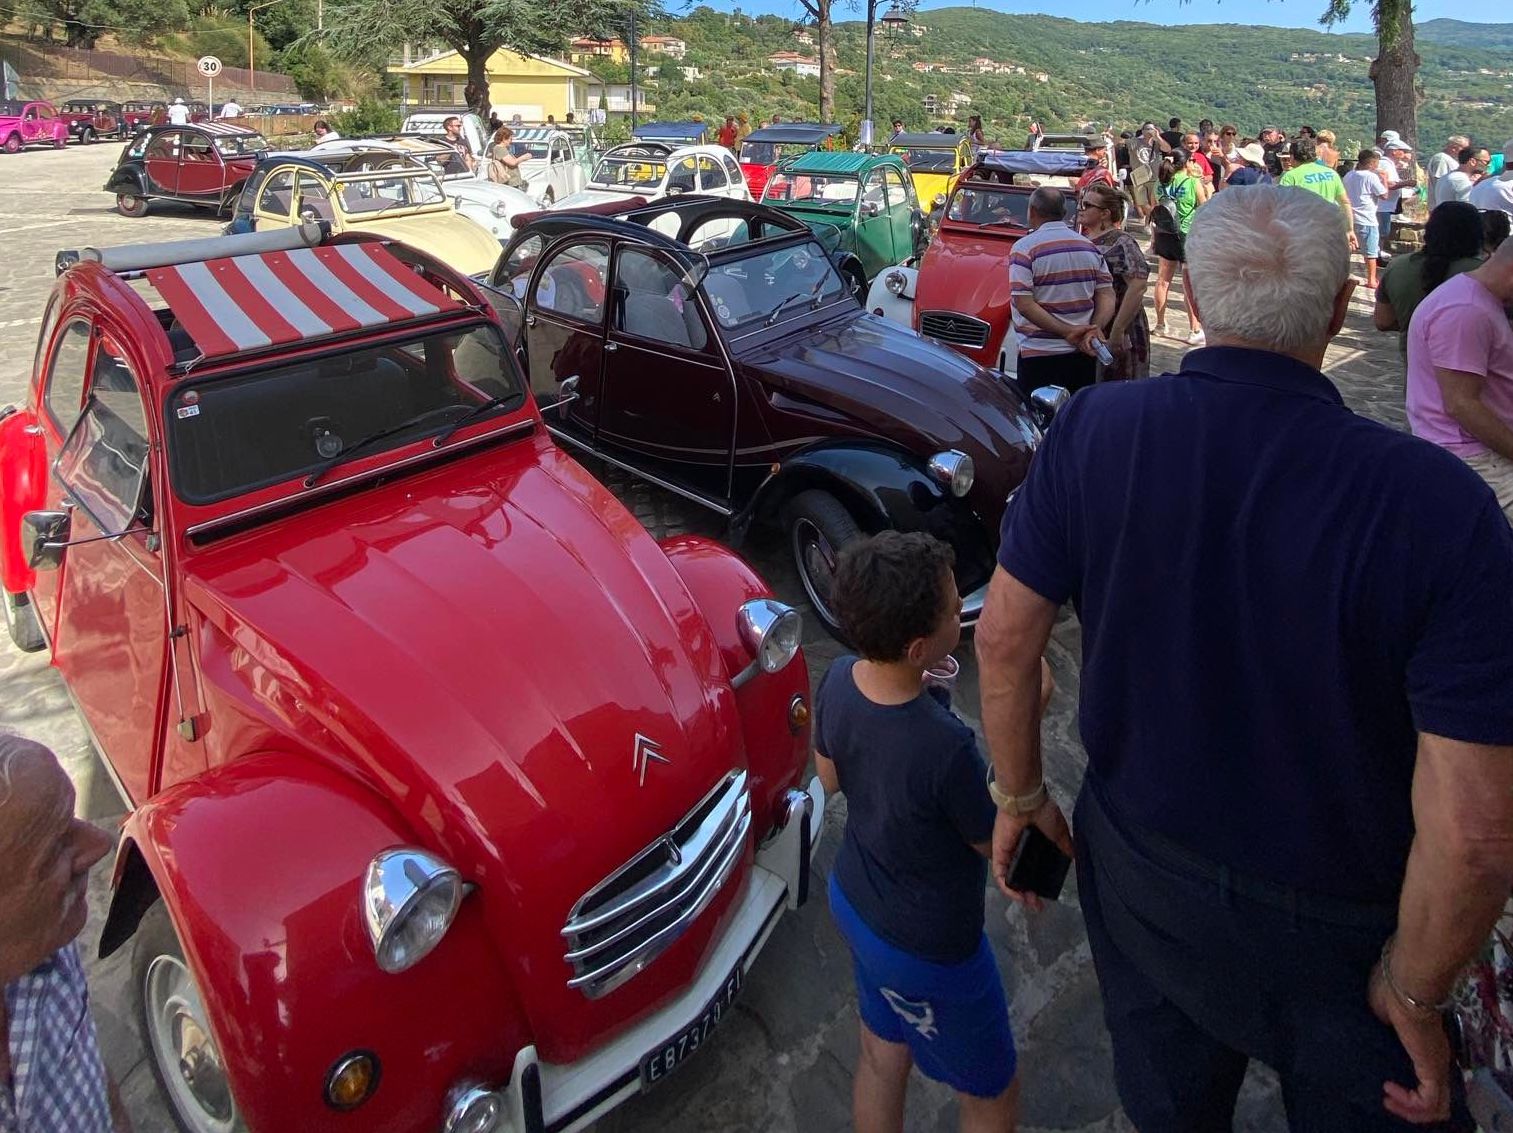 Raduno d’auto d’epoca a Matonti di Laureana Cilento: visita nel borgo e assaggio prodotti tipici